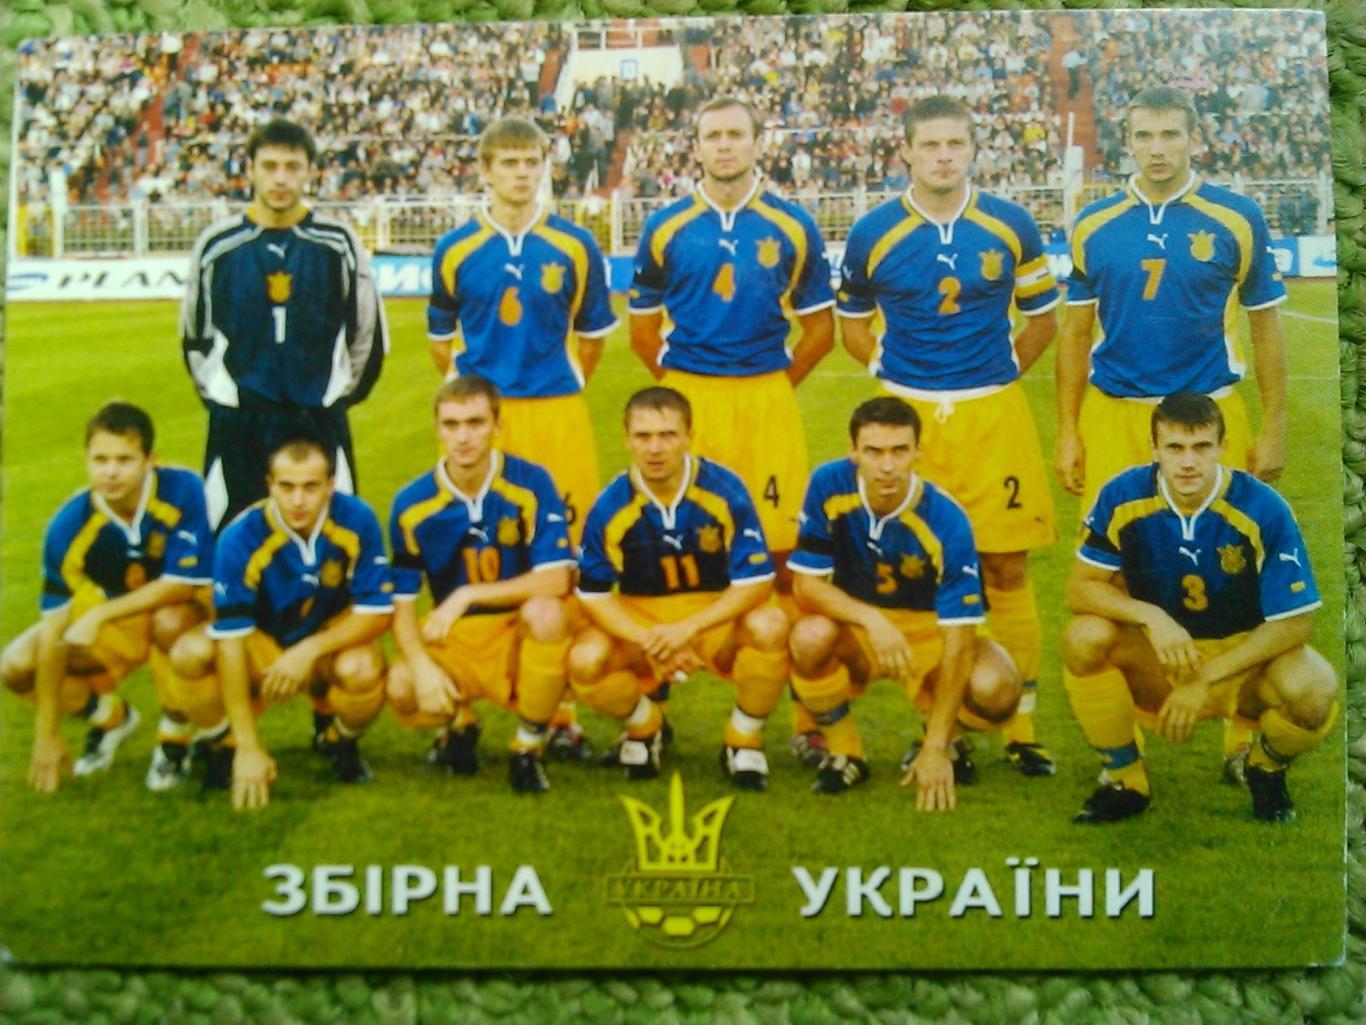 ЗБІРНА УКРАЇНИ (Украины) -календарик 2002. Оптом скидки до 45%!